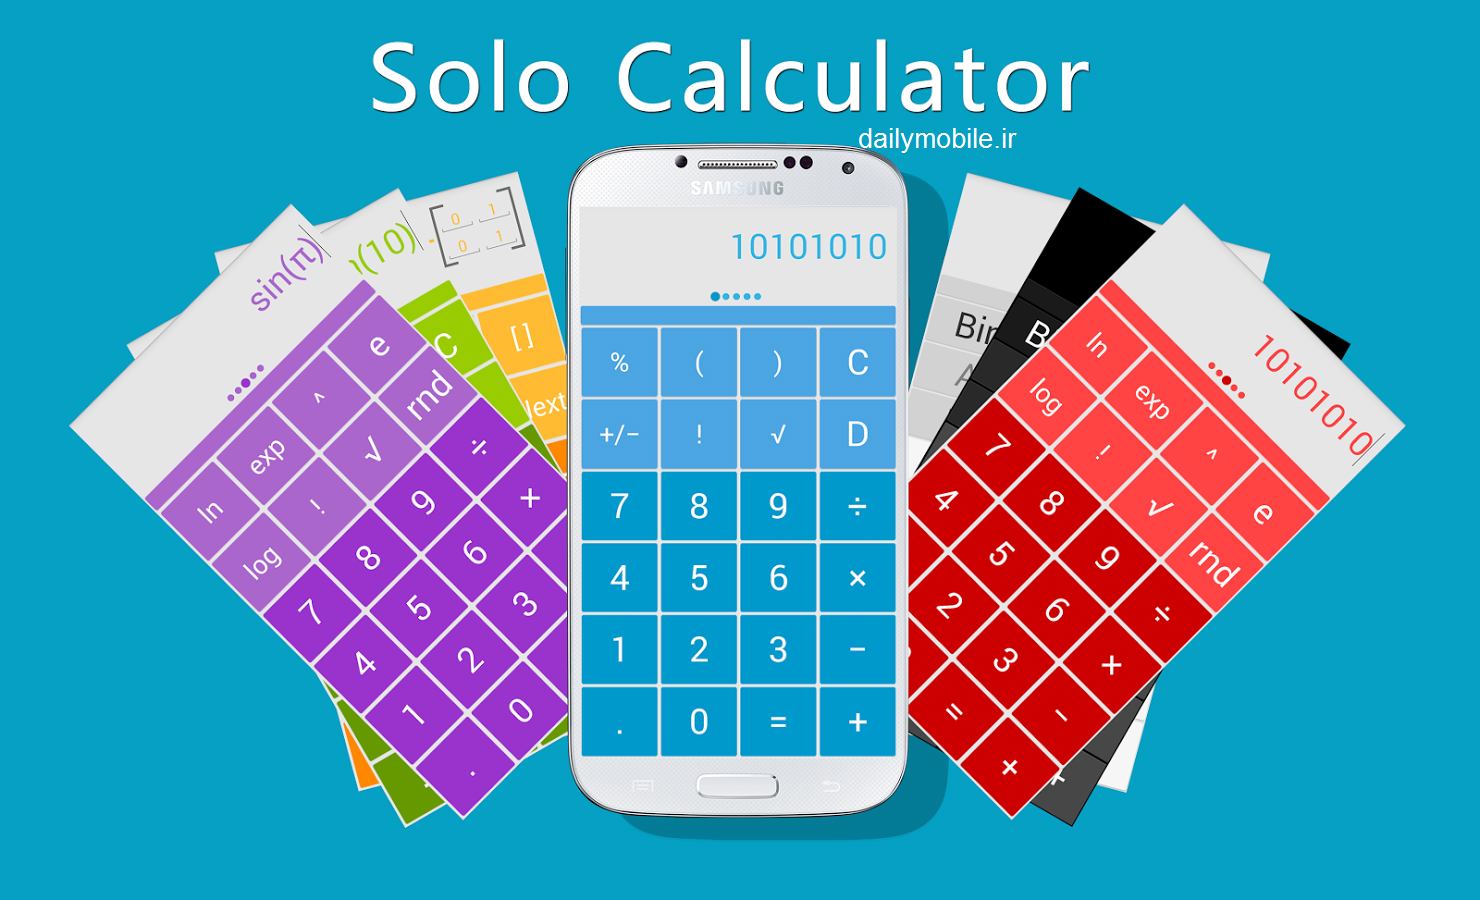 دانلود ماشین حساب با قابلیت انتخاب رنگ برای اندروید Solo Scientific Calculator